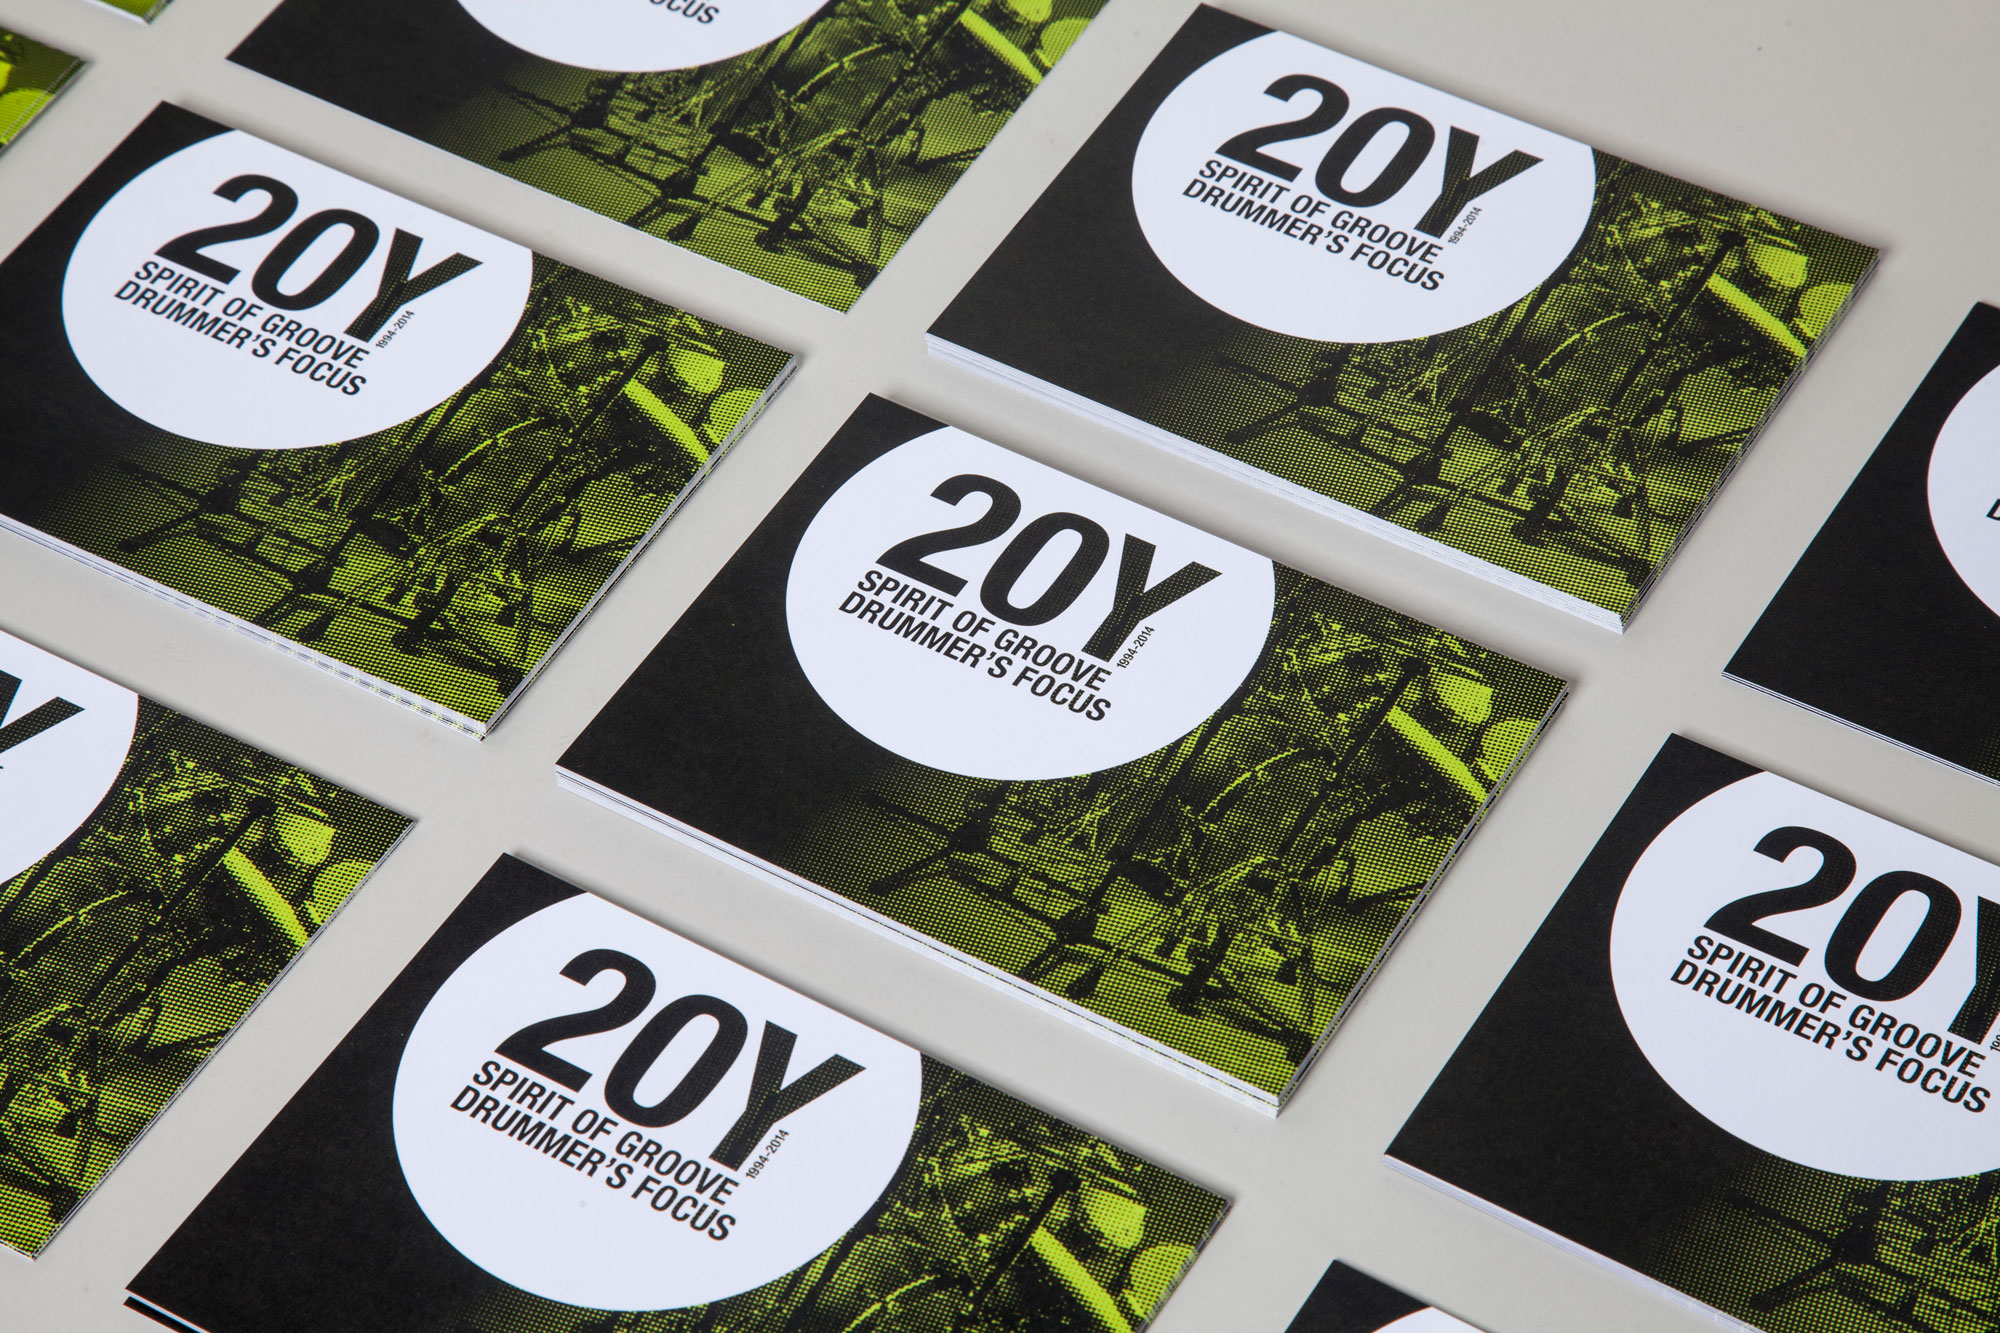 75a Büro für Gestaltung aus Stuttgart gestaltet die Drucksachen für 20Y drummer's focus Stuttgart